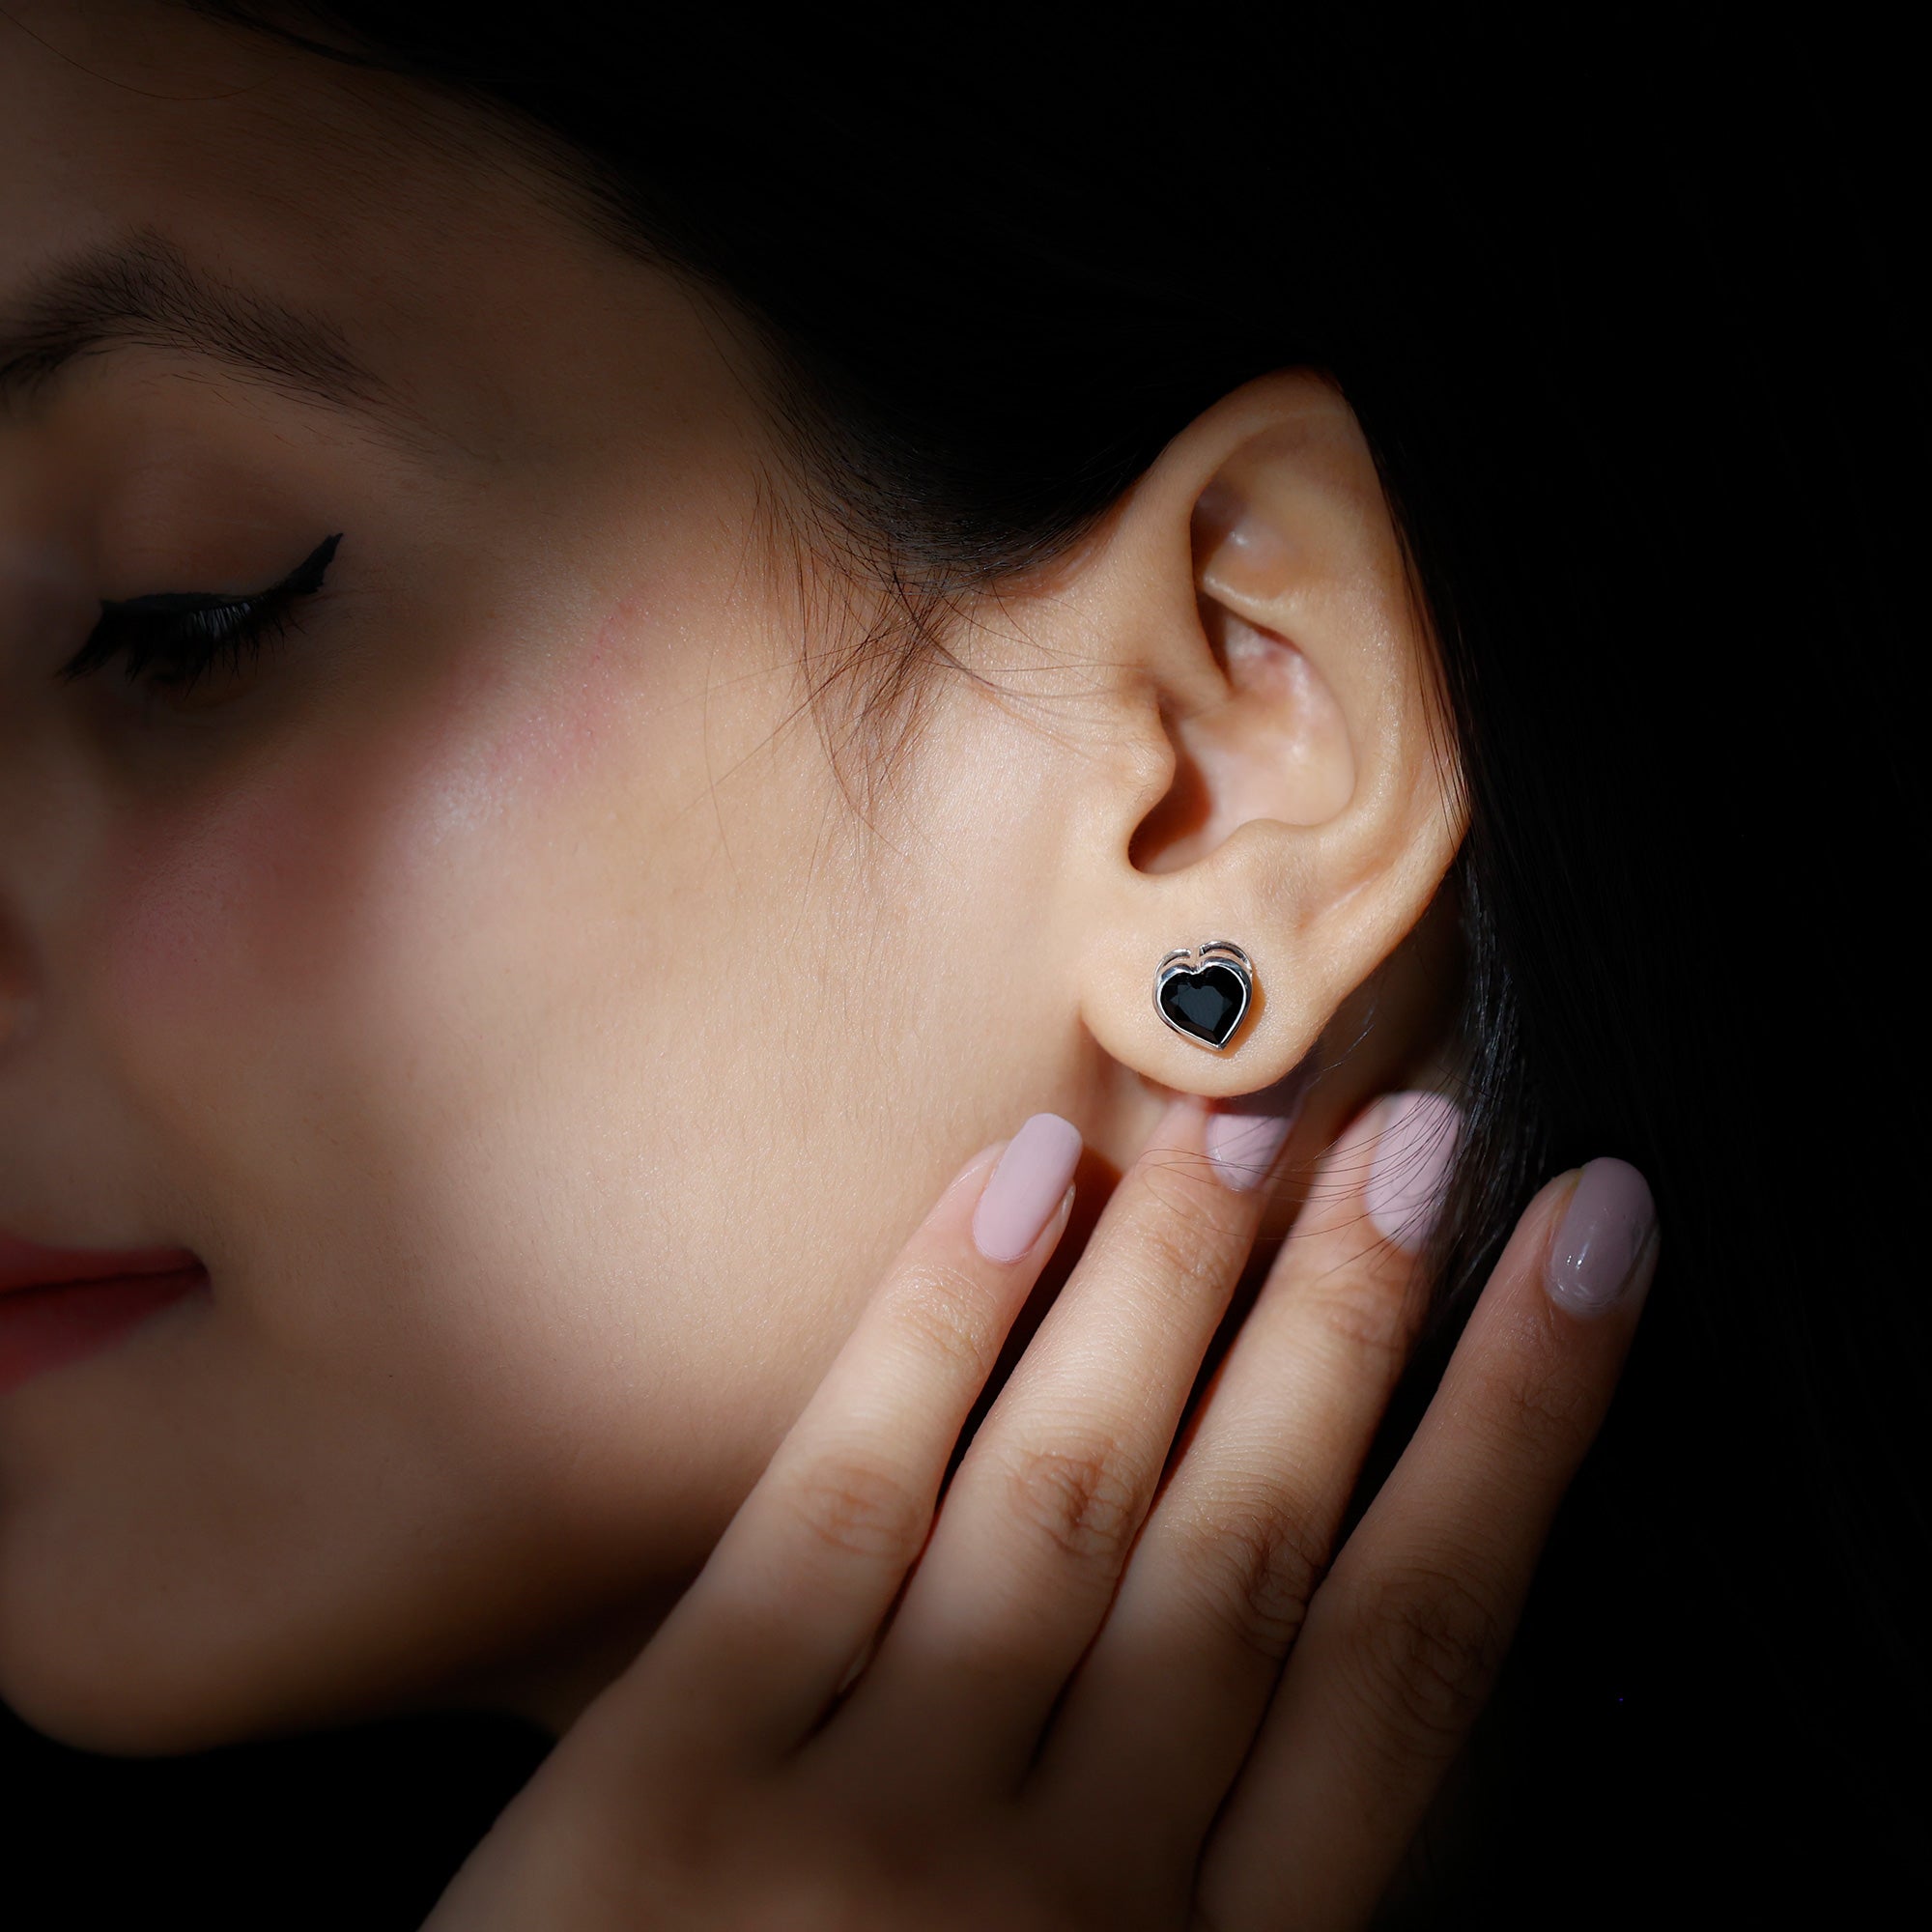 2.5 CT Bezel Set Heart Cut Black Onyx Solitaire Stud Earring Black Onyx - ( AAA ) - Quality - Rosec Jewels